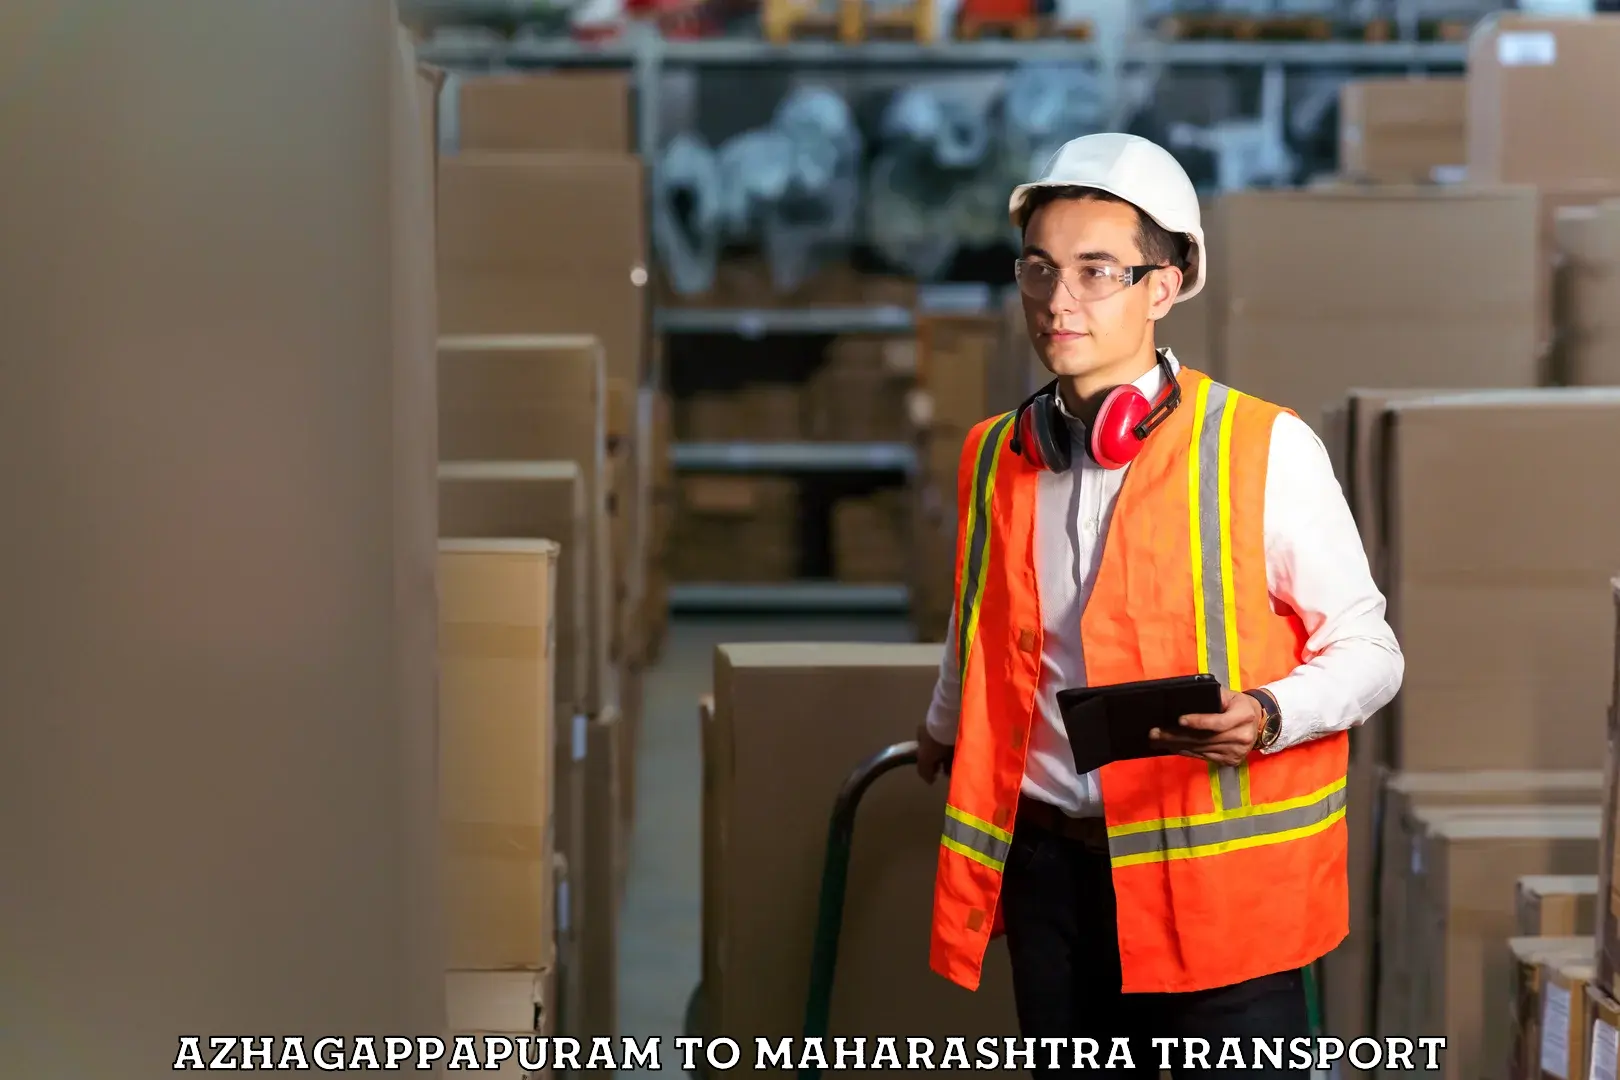 Shipping services Azhagappapuram to Maharashtra